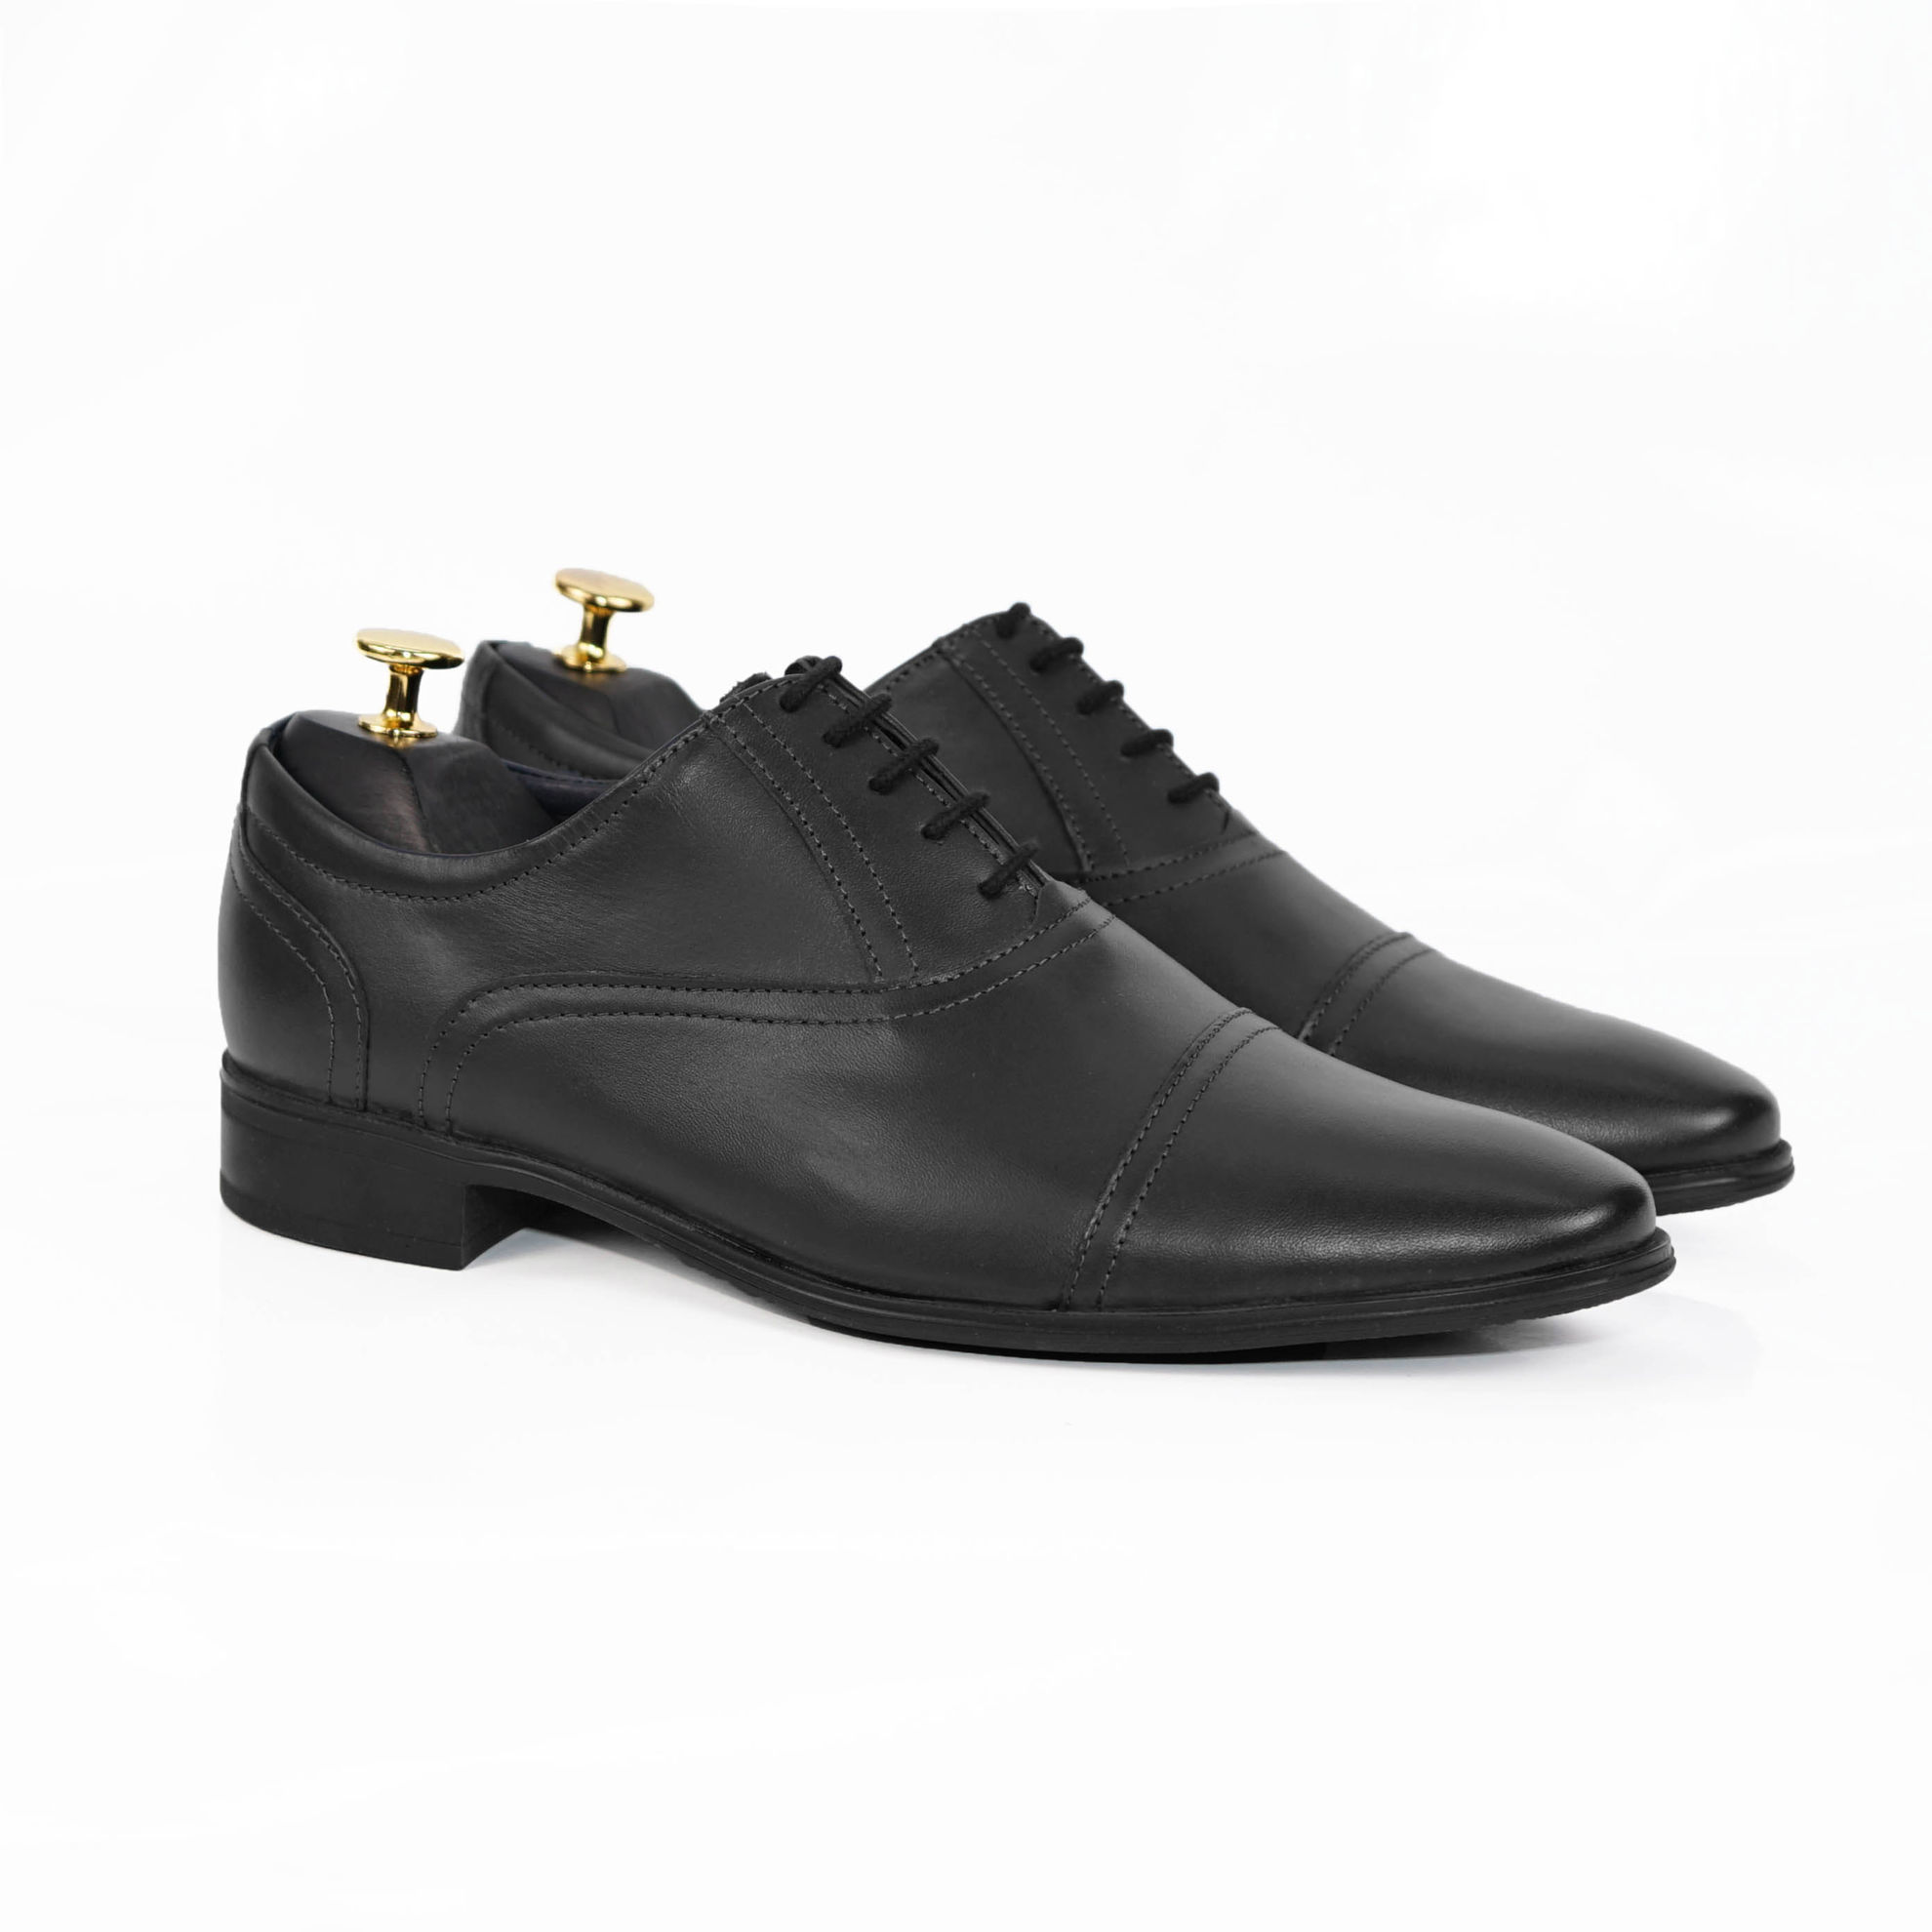 Imagine Pantofi eleganți bărbați din piele naturală 905 negru